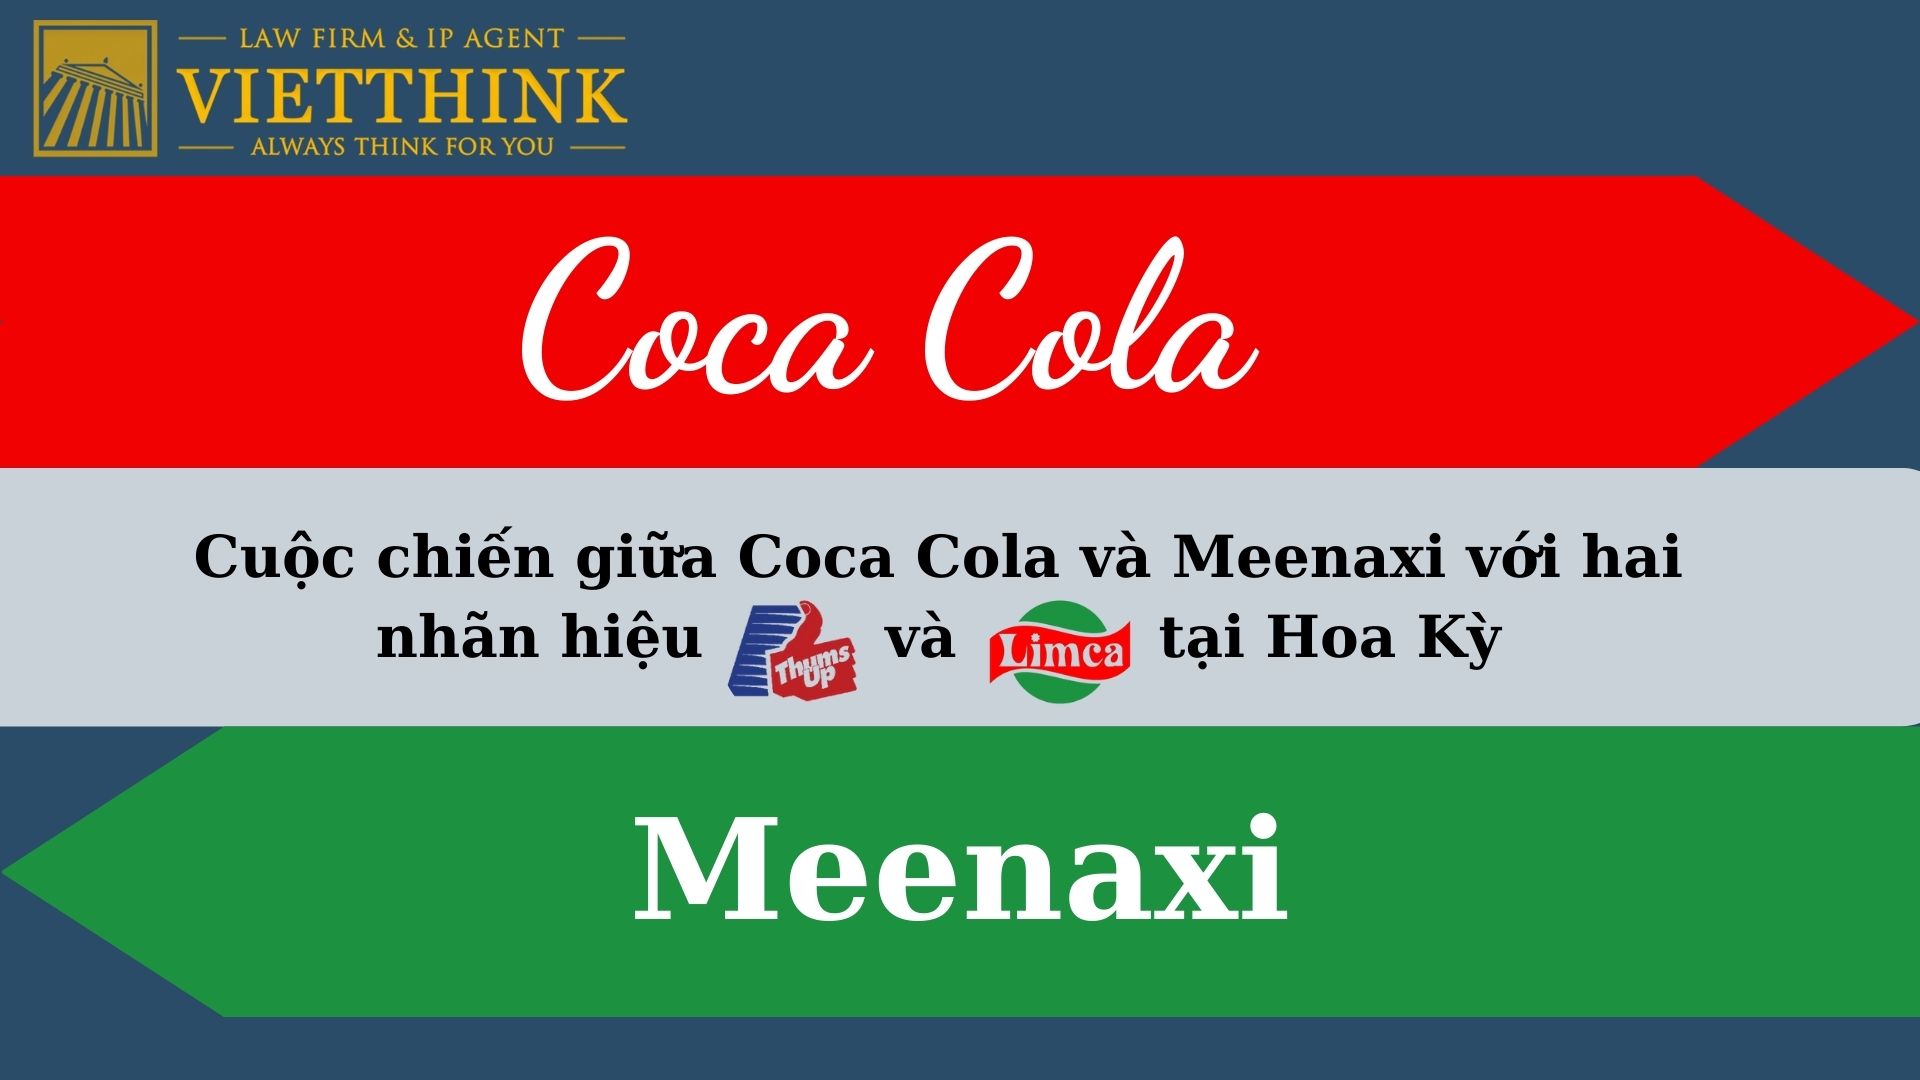 Coco Cola đã không thành công trong việc hủy bỏ hiệu lực nhãn hiệu “Thums Up” và “Limca” của Meenaxi tại Hoa Kỳ.